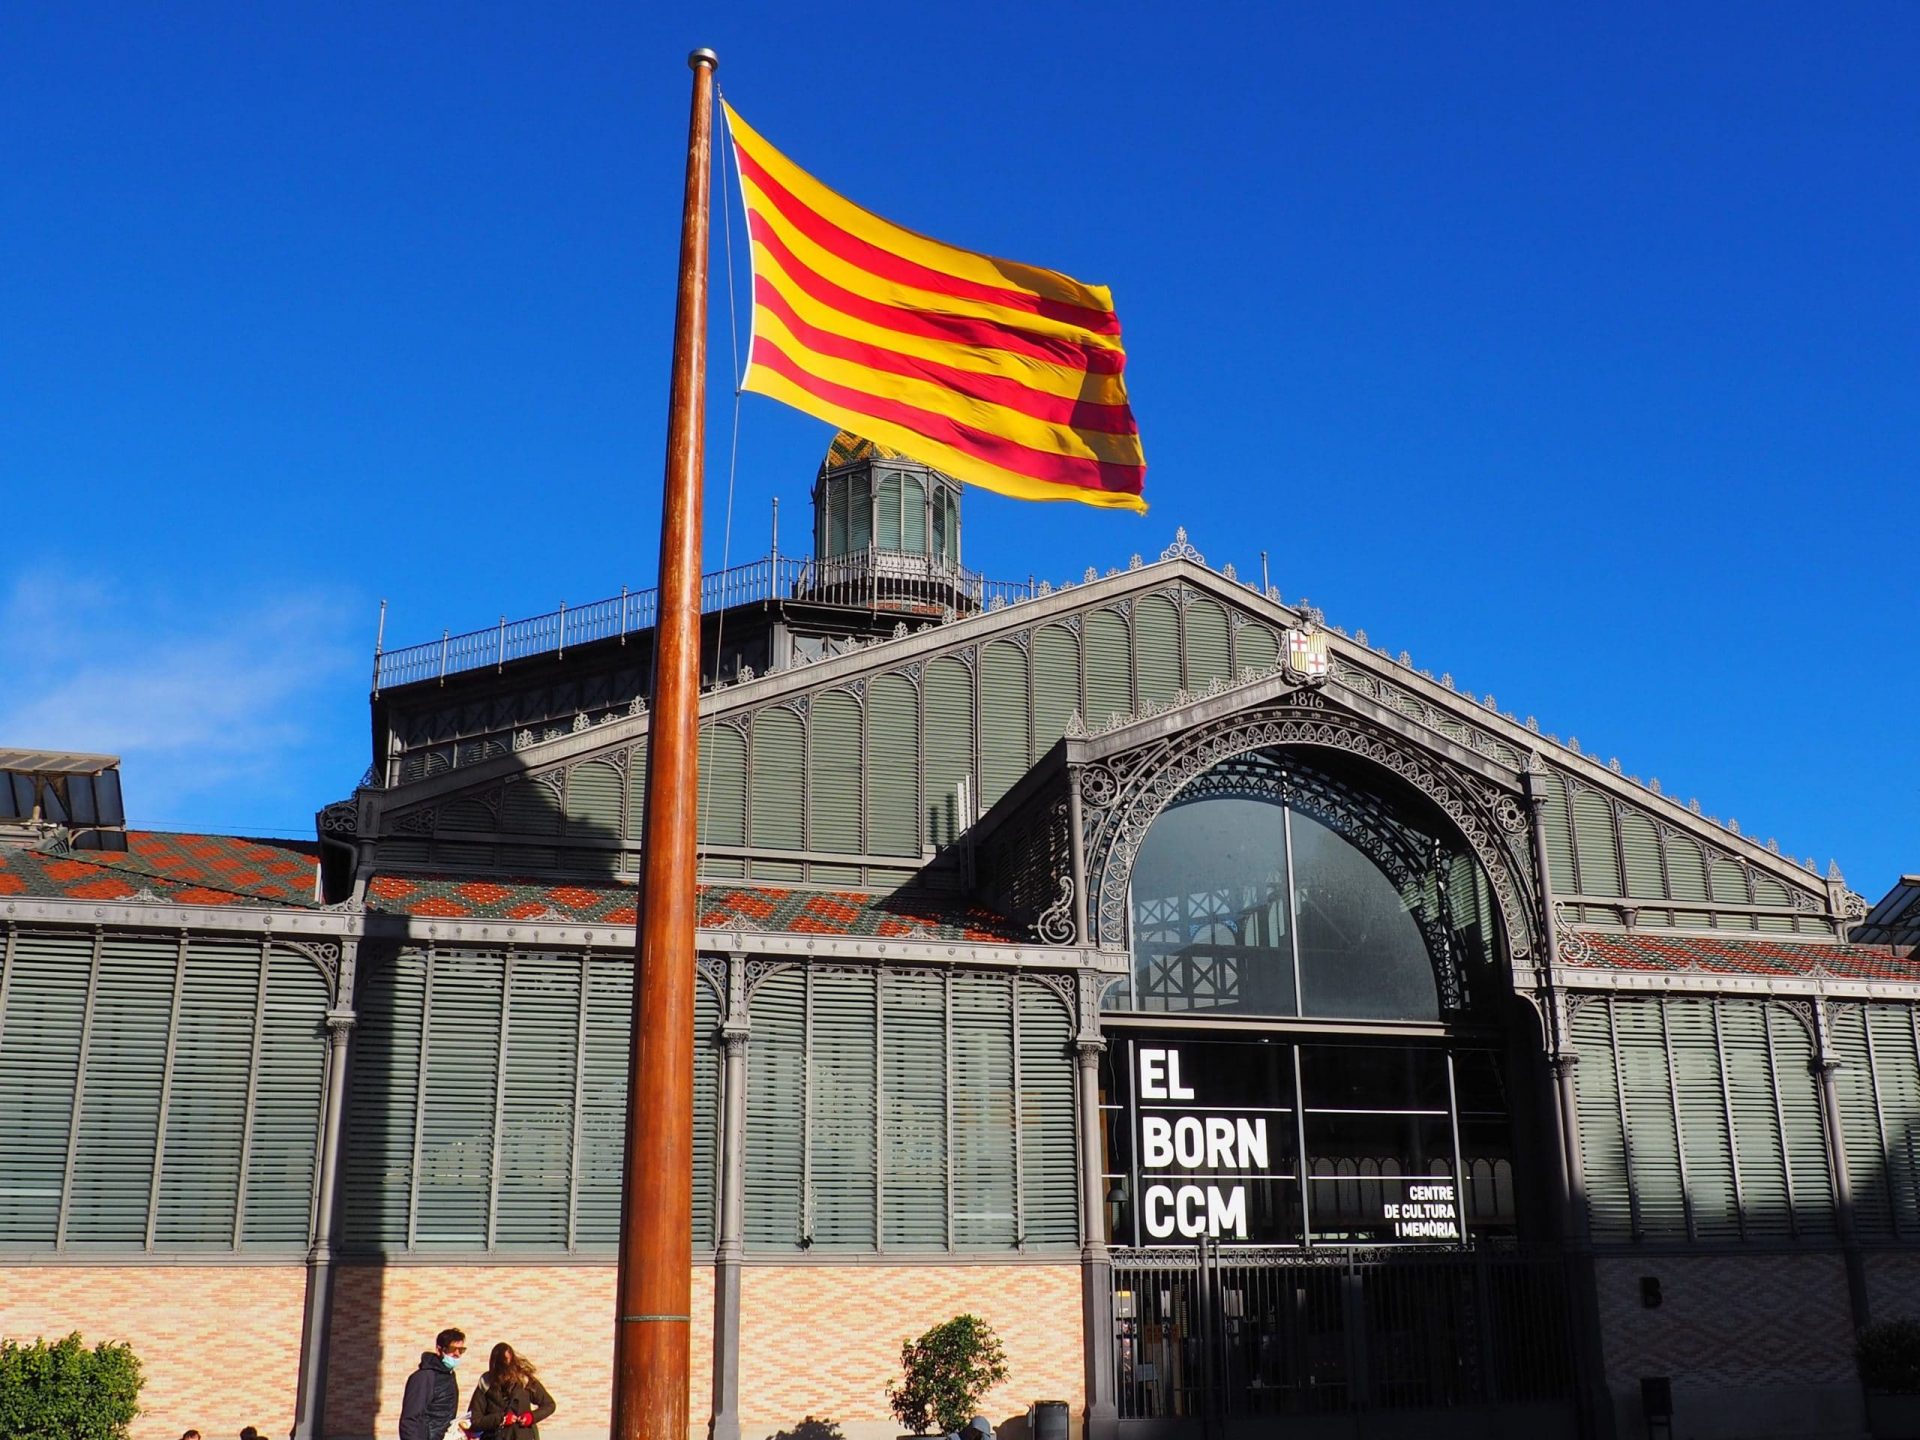 La bandiera catalana e un edificio del mercato. El Born CCM. Centro di cultura e memoria. Barcellona